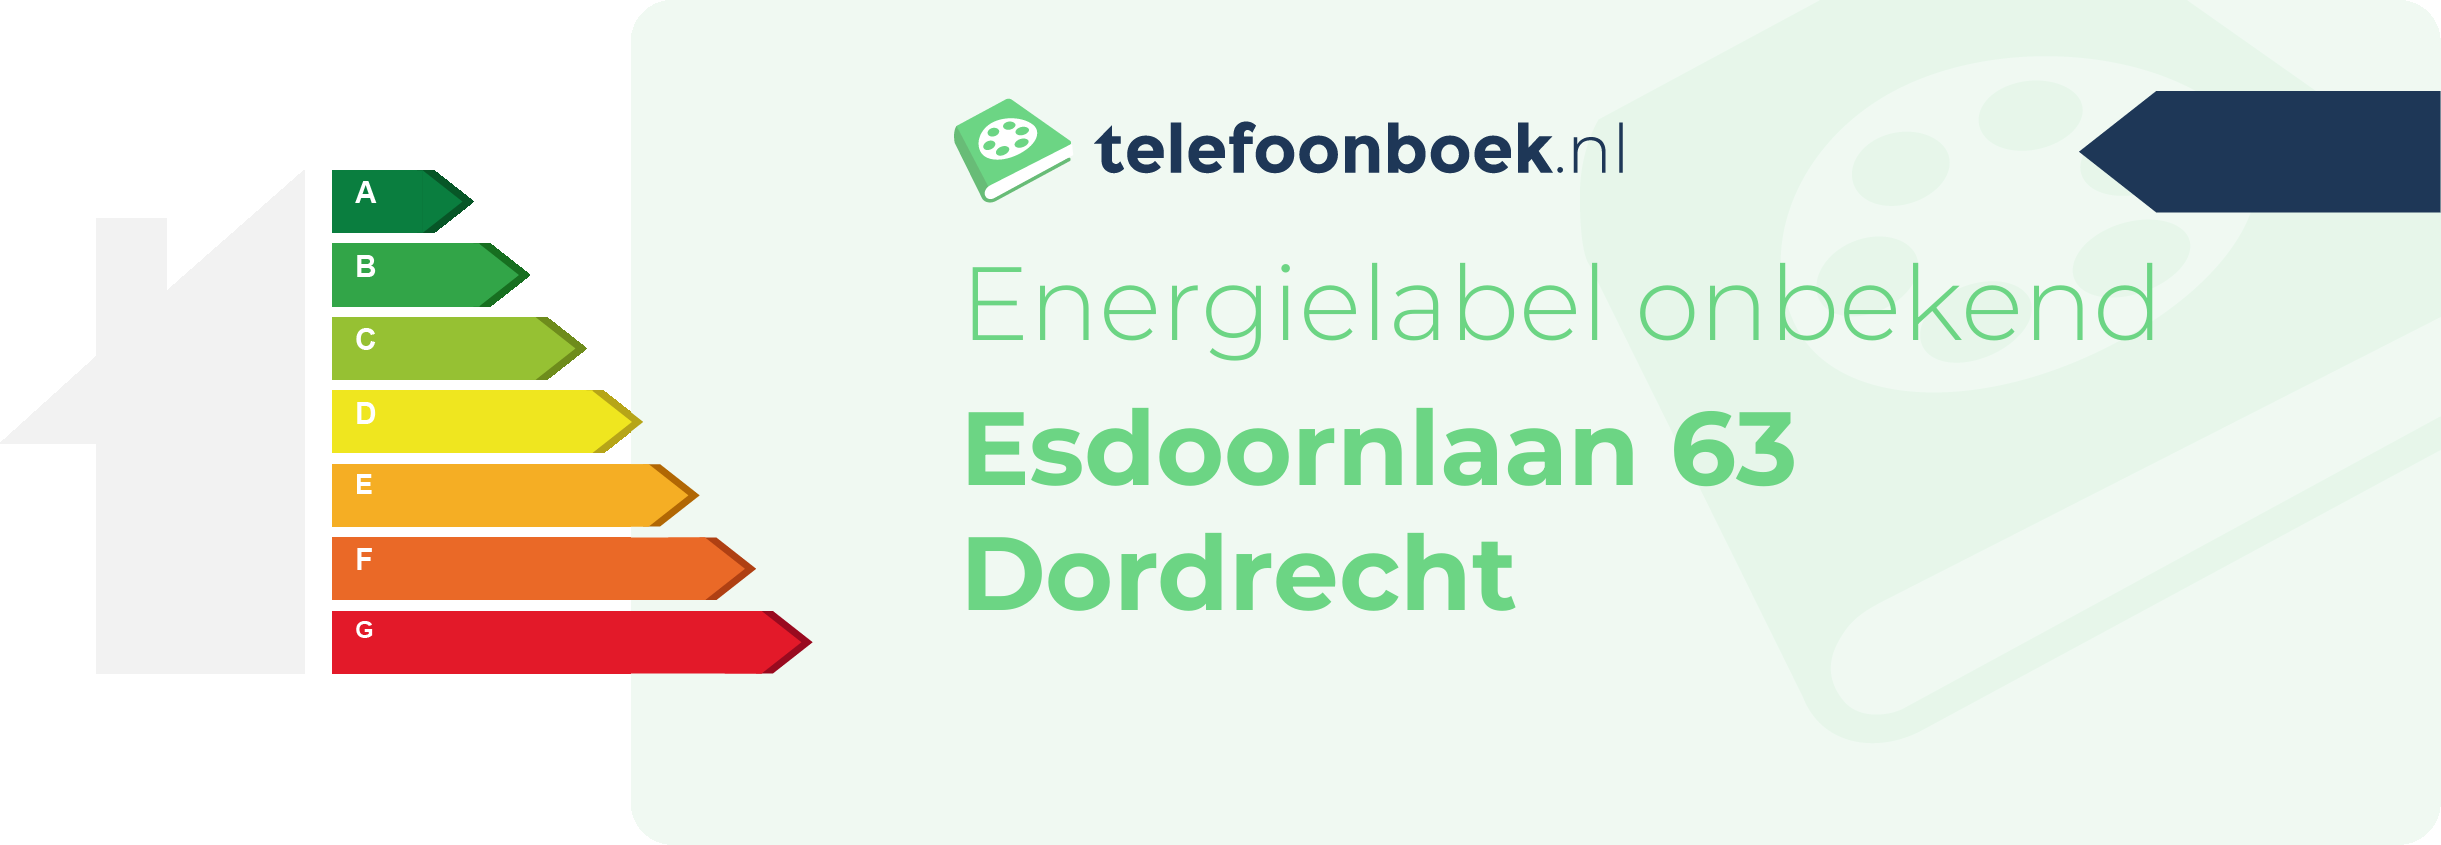 Energielabel Esdoornlaan 63 Dordrecht